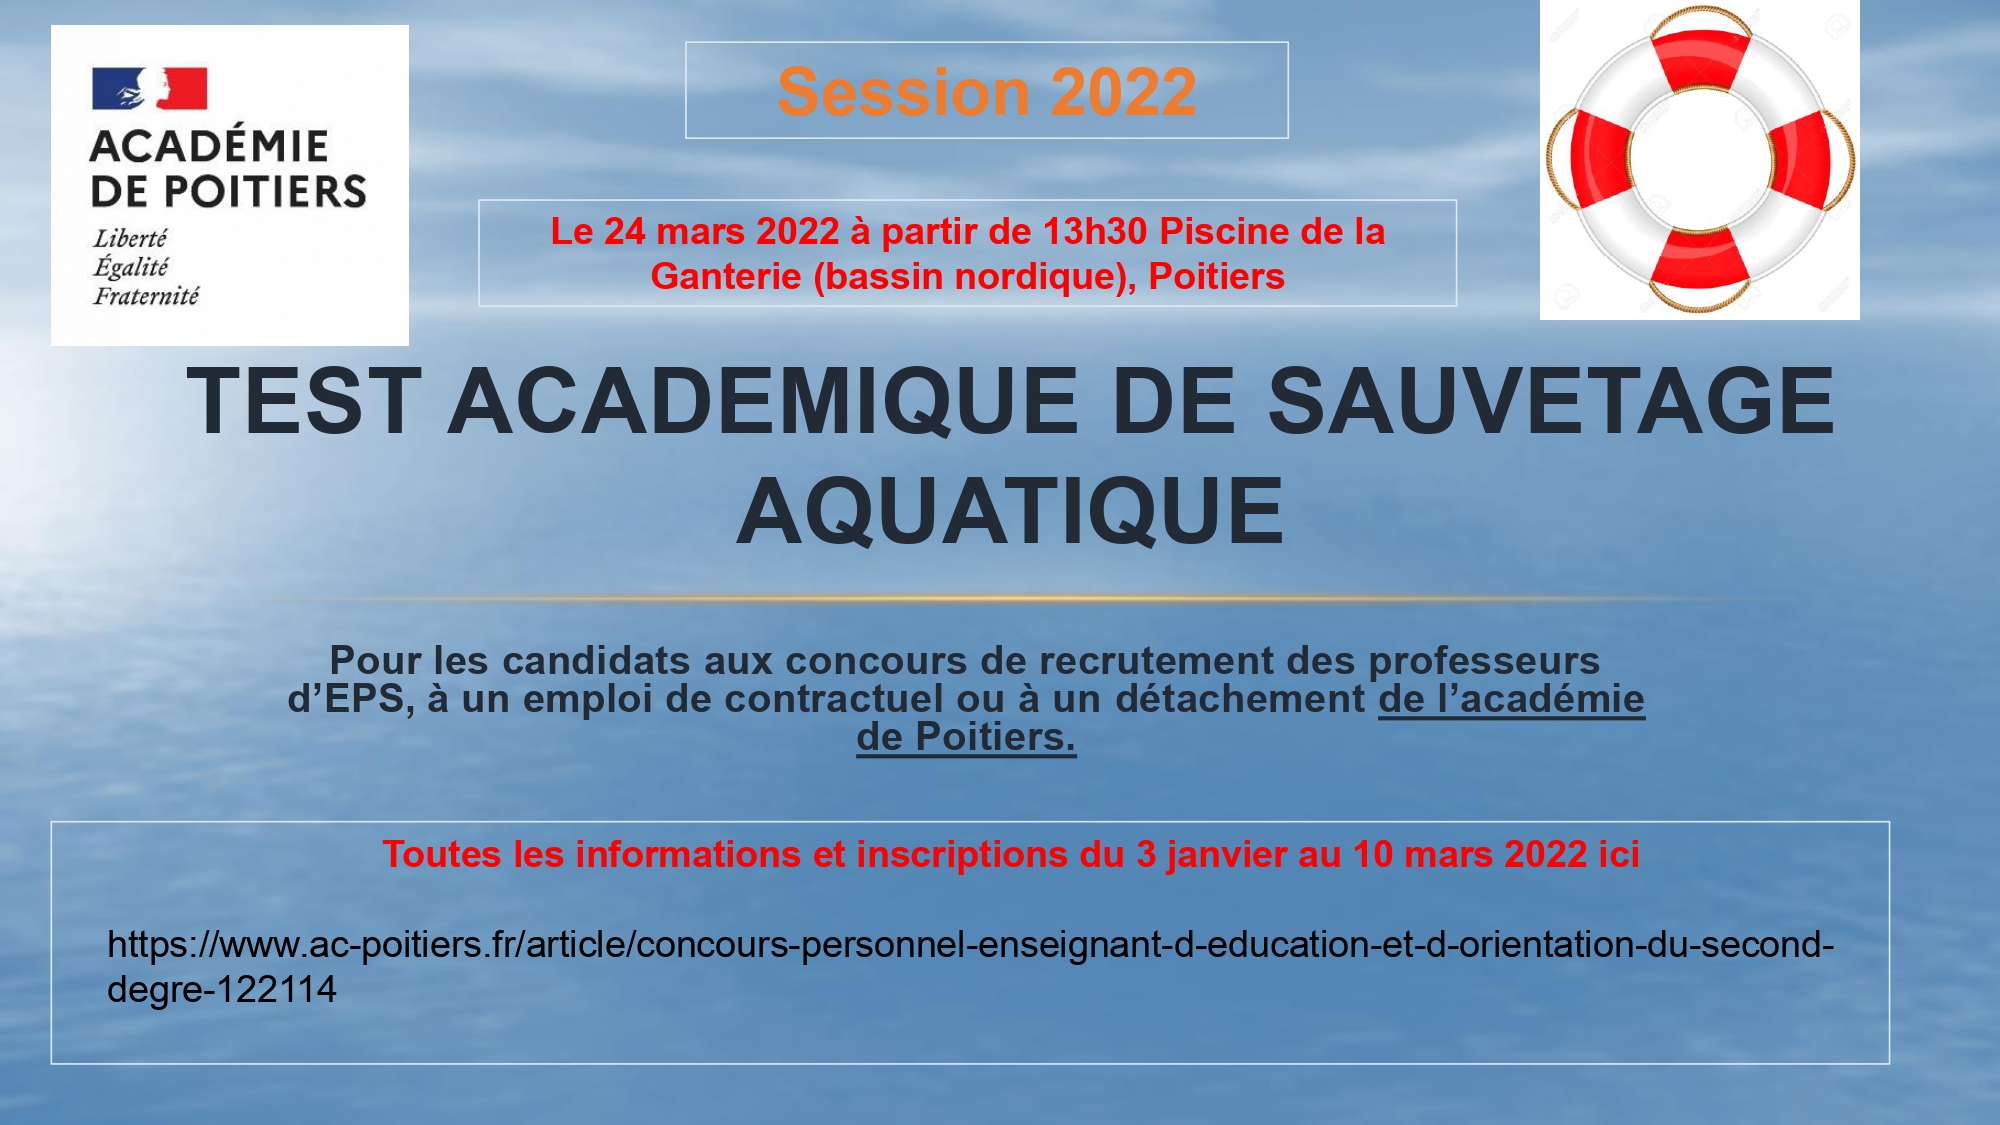 Test Acad mique De Sauvetage Aquatique ducation Physique Et Sportive P dagogie Acad mie